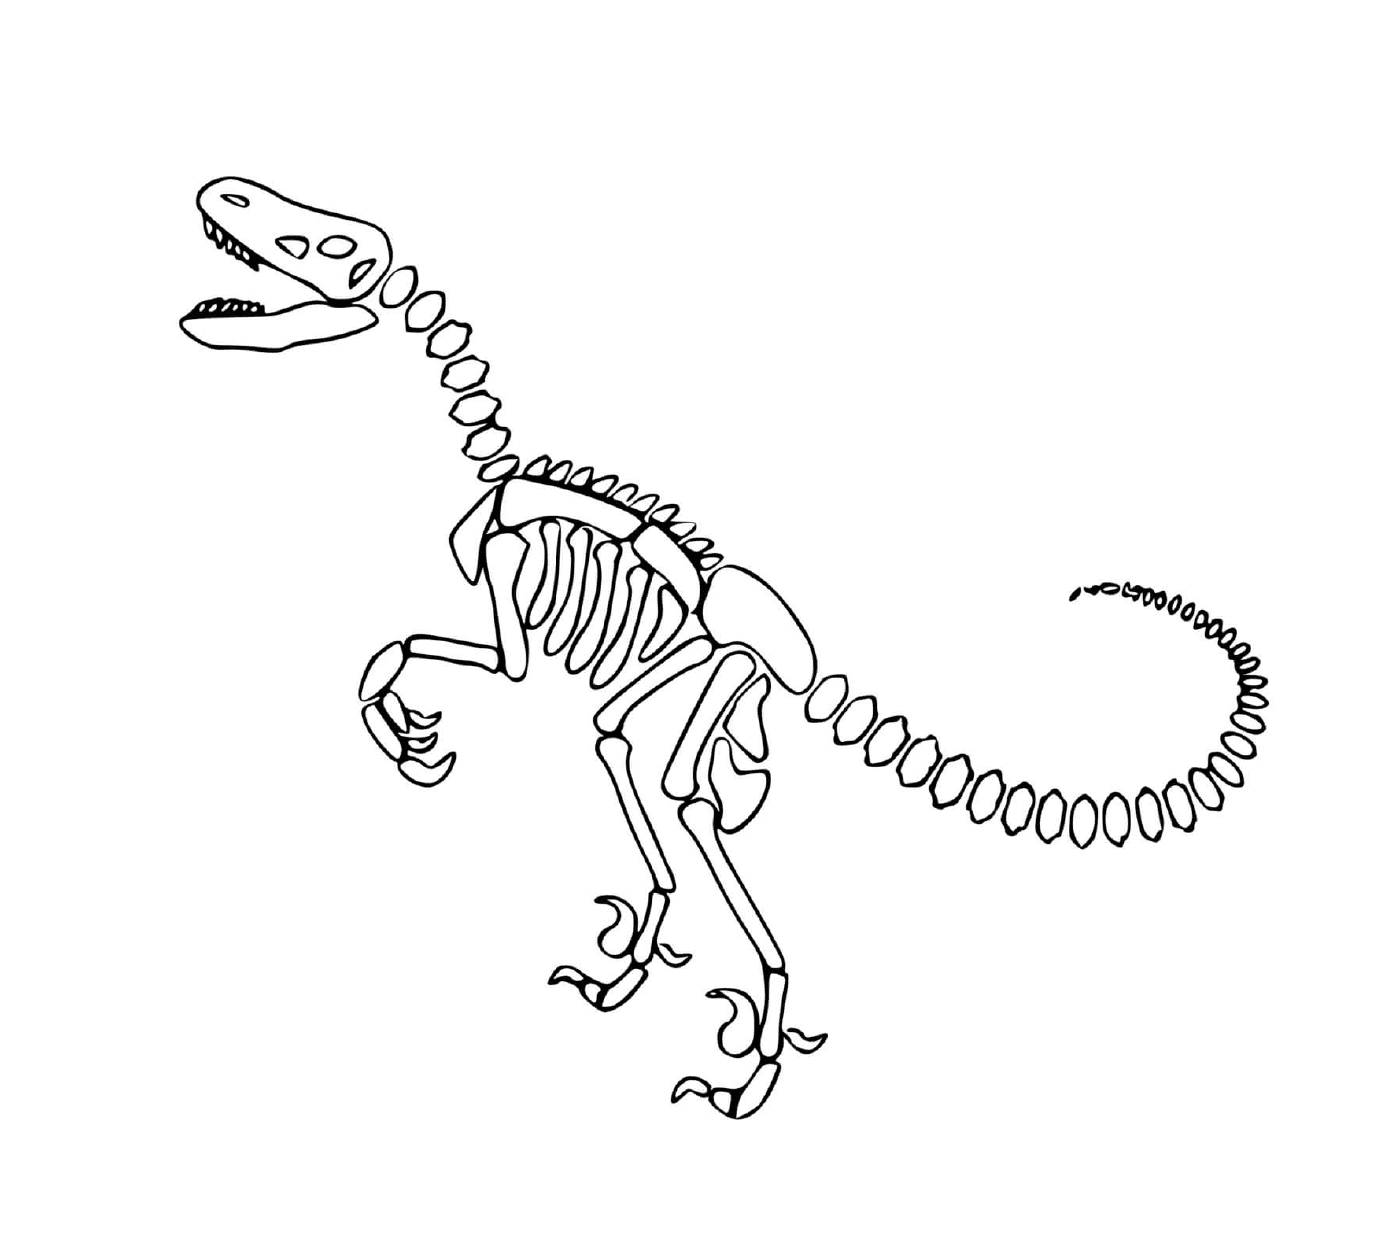  Dinossauro, esqueleto, com osso espiral 